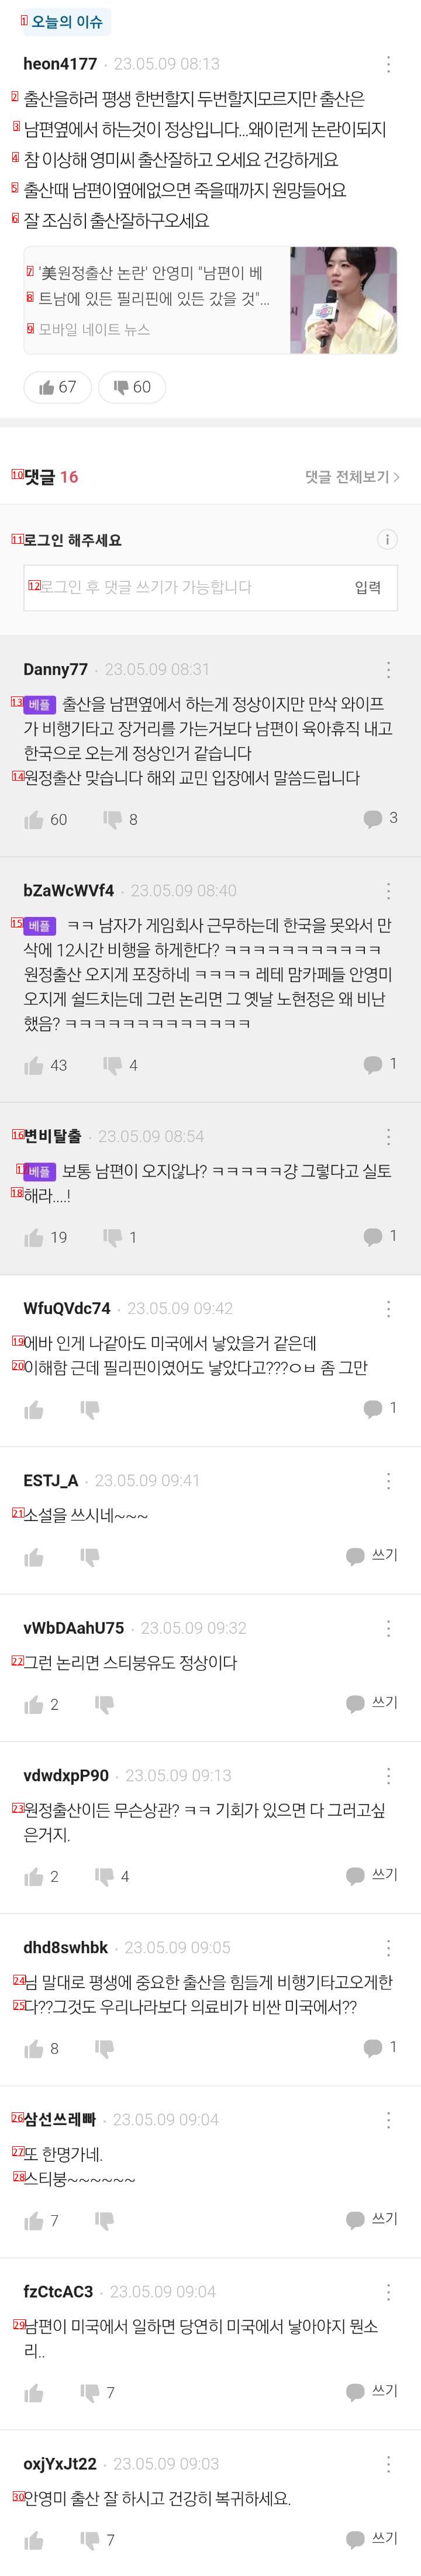 안영미 원정출산 논란 터짐 ㄷㄷ